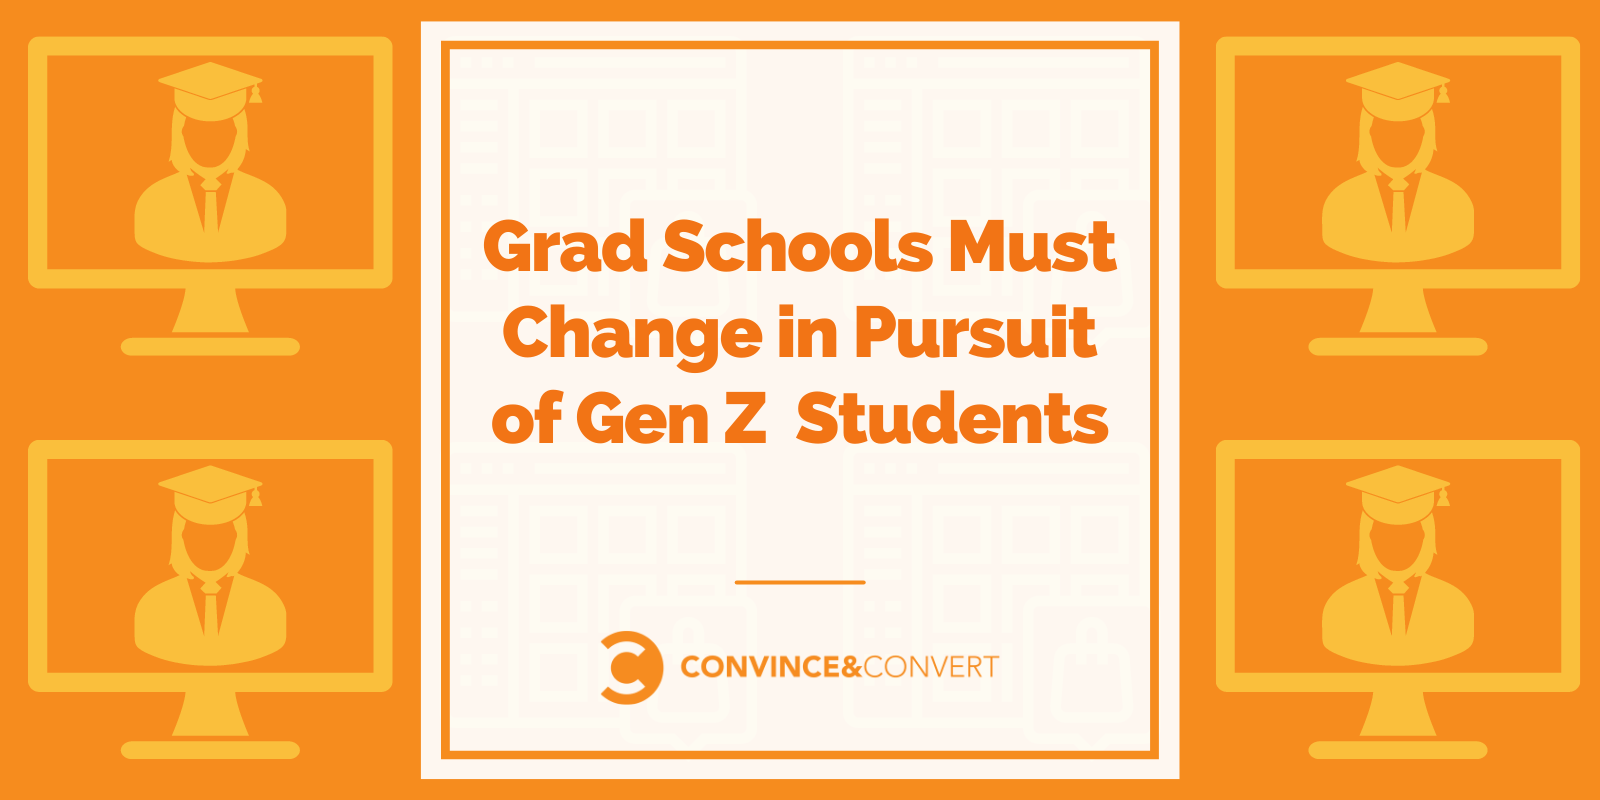 Grad Schools Must Change in Pursuit of Gen Z Students